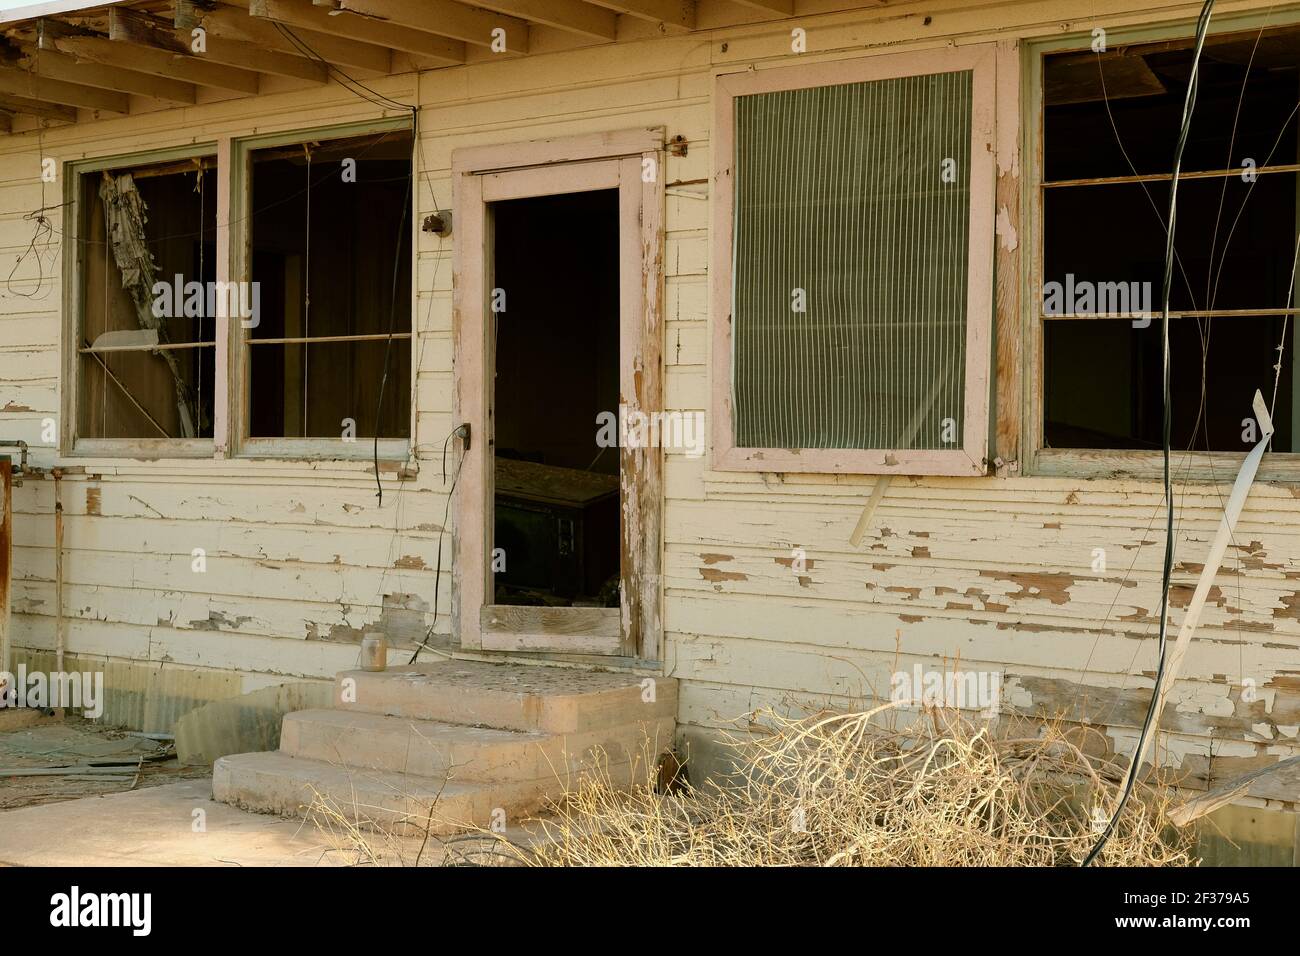 Außenansicht eines verlassenen Hauses in der Wüste von Arizona, in der Nähe von Roll und Wellton, Arizona USA; Verfall und verlassene Haus fallen auseinander, vergessen, verlassen. Stockfoto